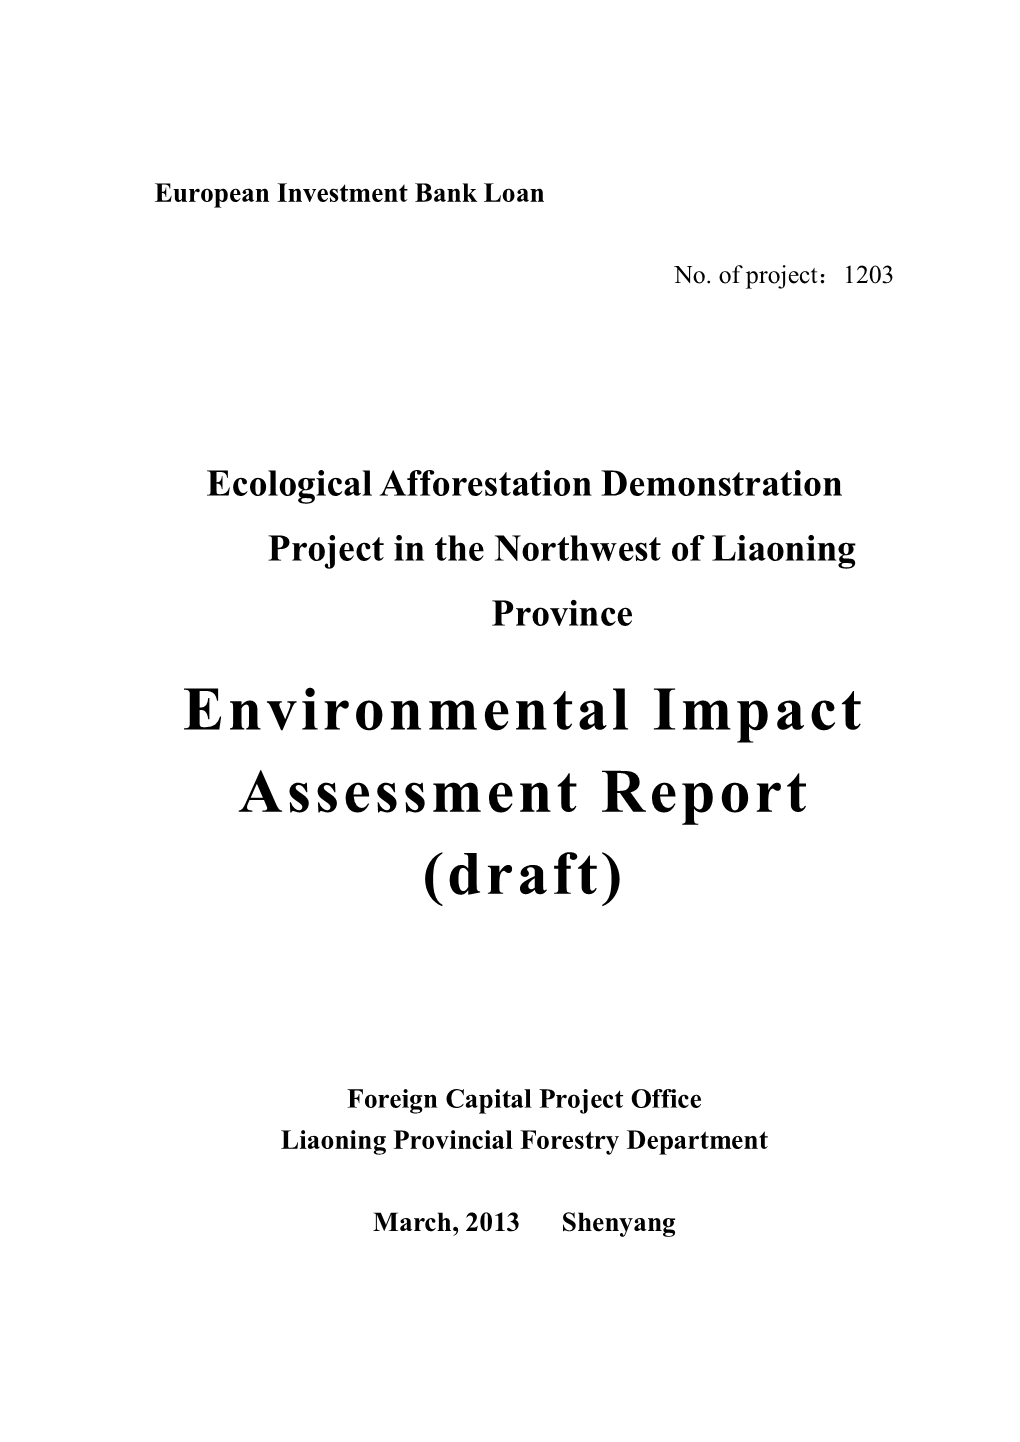 Environmental Impact Assessment Report (Draft)